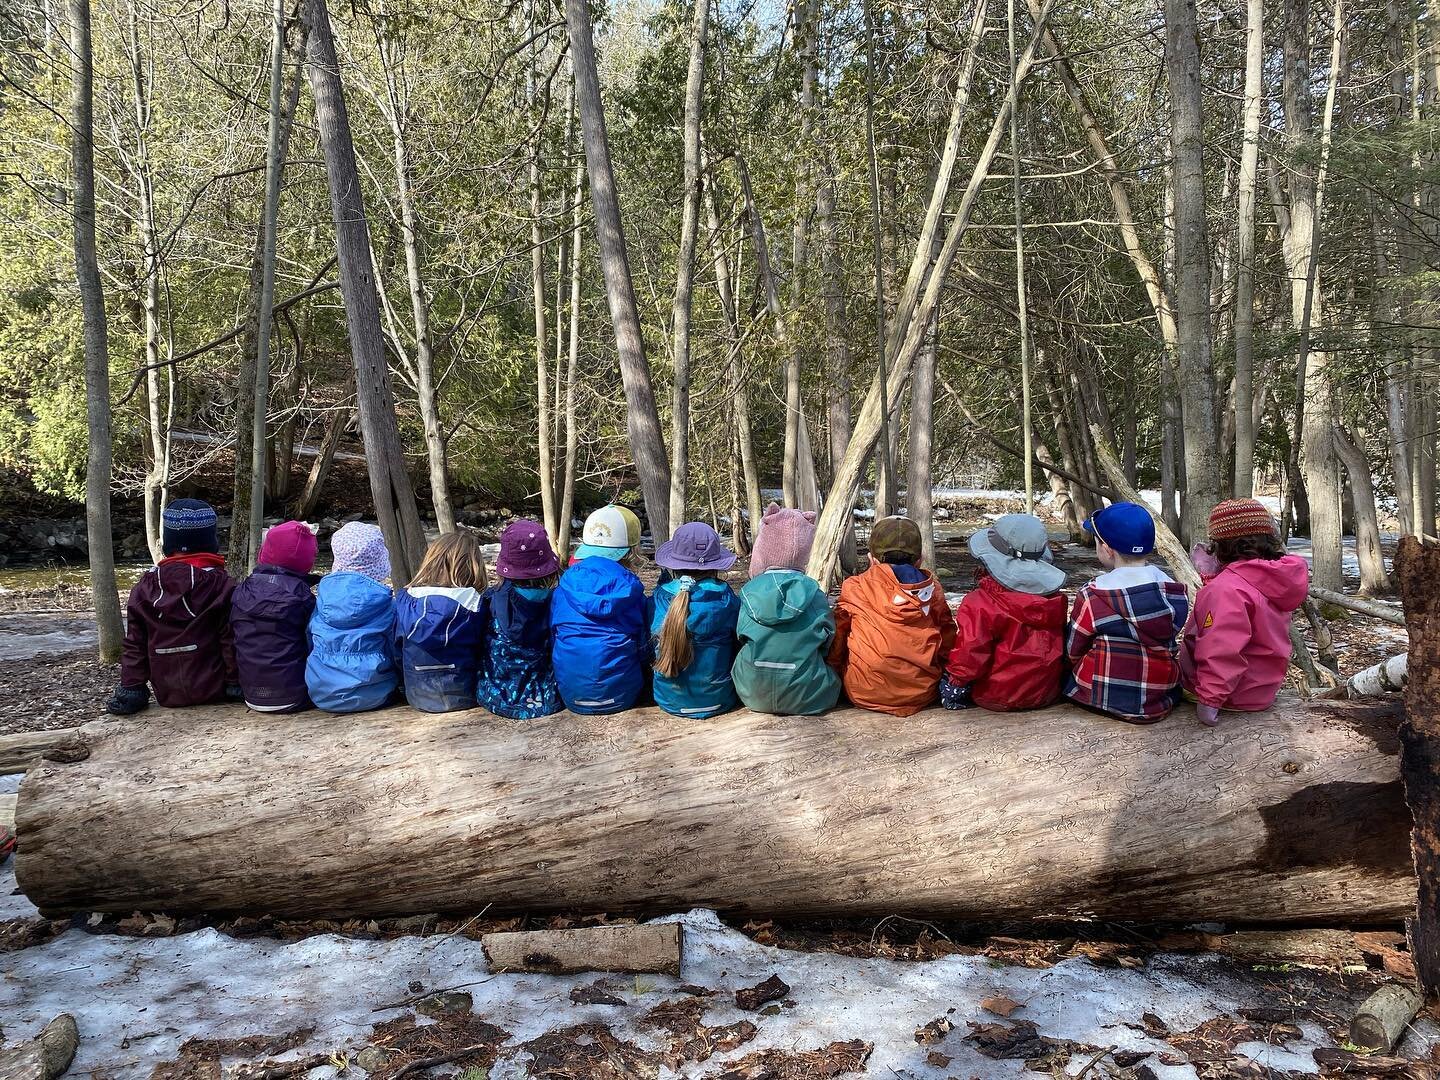 ❤️🌈 
.
.
.
#naturekindergarten #forestschool #rowantreechildrensschool